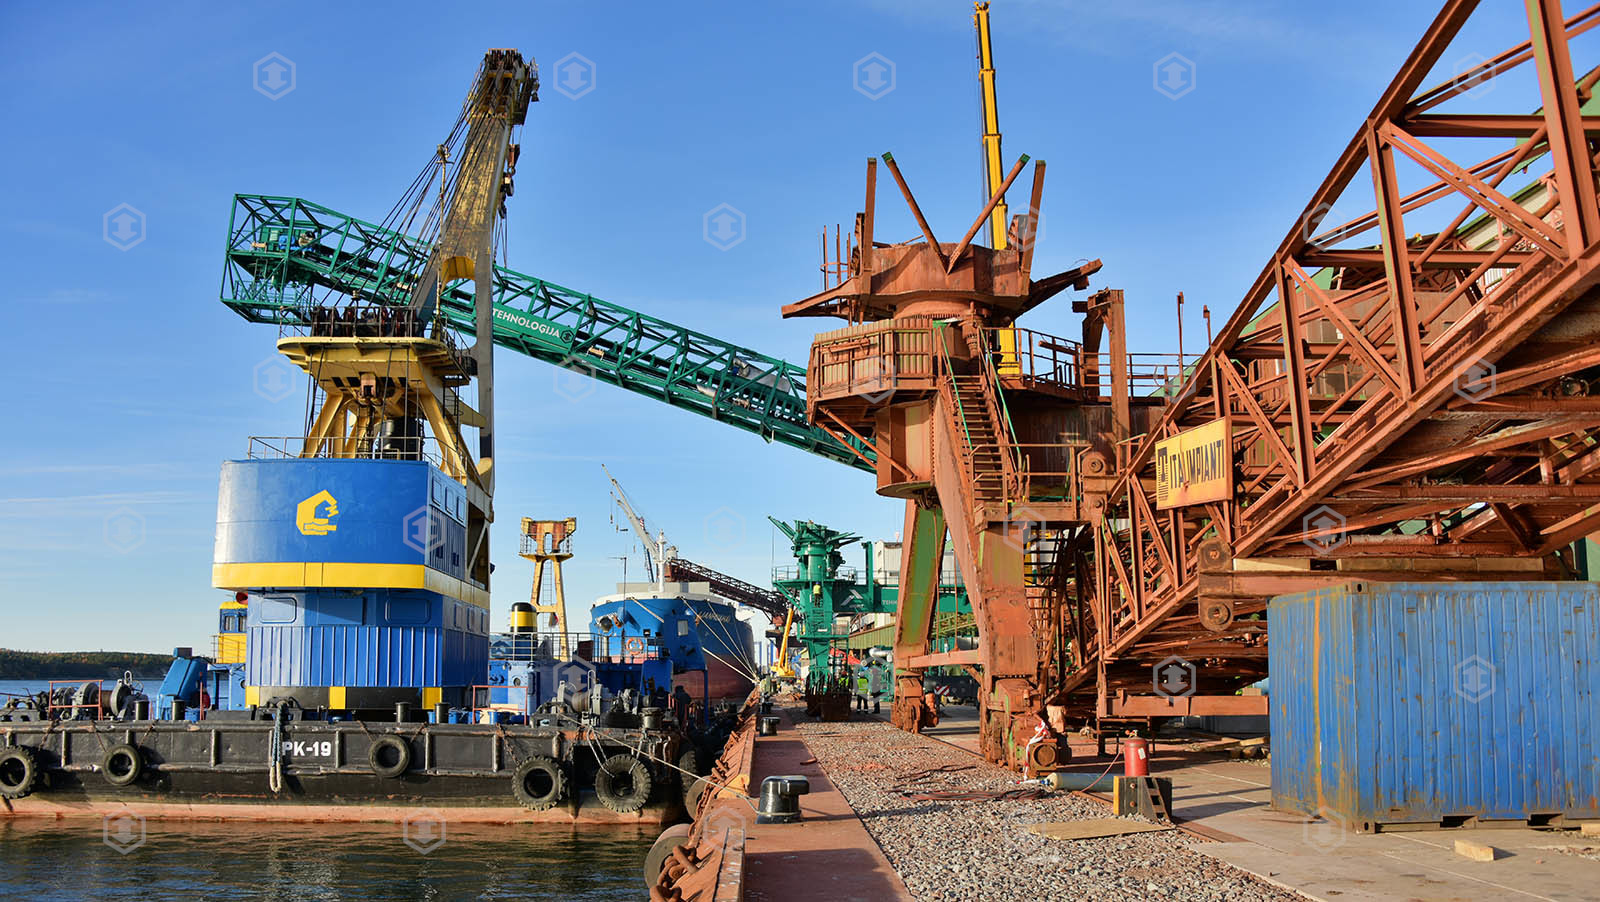 Демонтаж старого судопогрузчика, установка нового. выполнен для компании "Biriu Kroviniu Terminalas", порт г. Клайпеда, Литва, 2015.